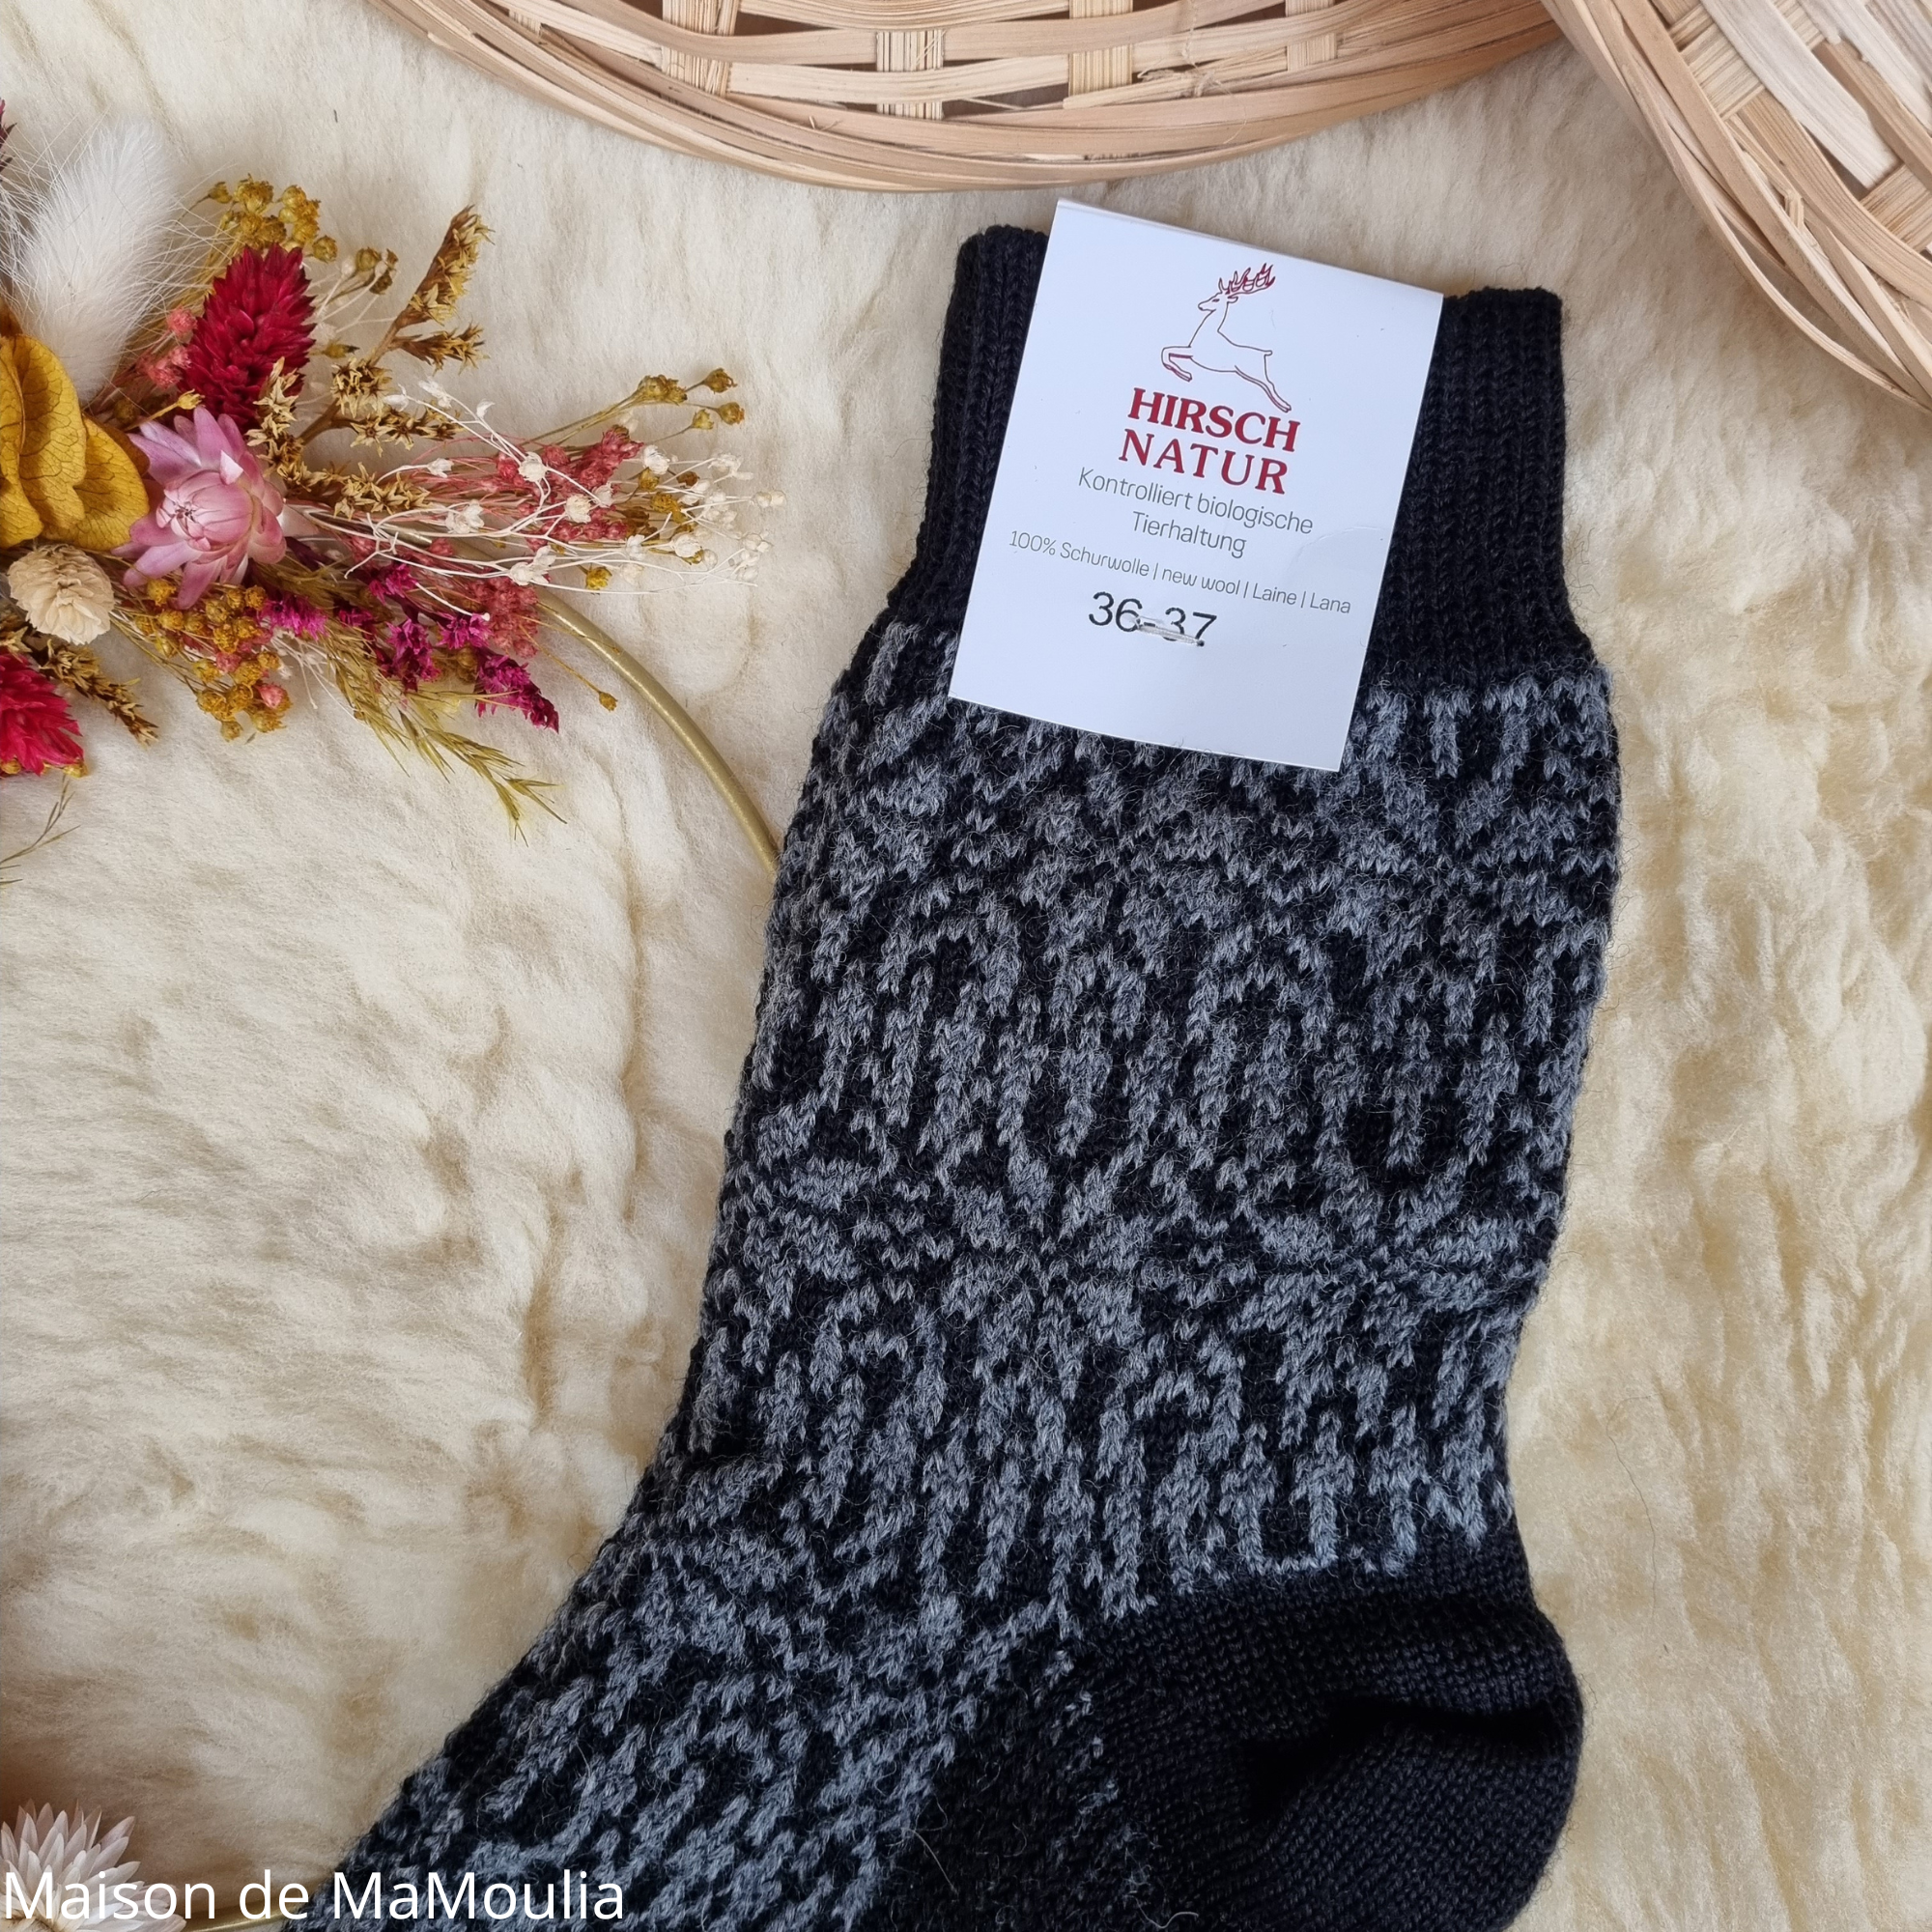 030-chaussettes-pure-laine-bio-ecologique-hirsch-natur-maison-de-mamoulia-norvegienne- adulte- noir- anthracite-gris